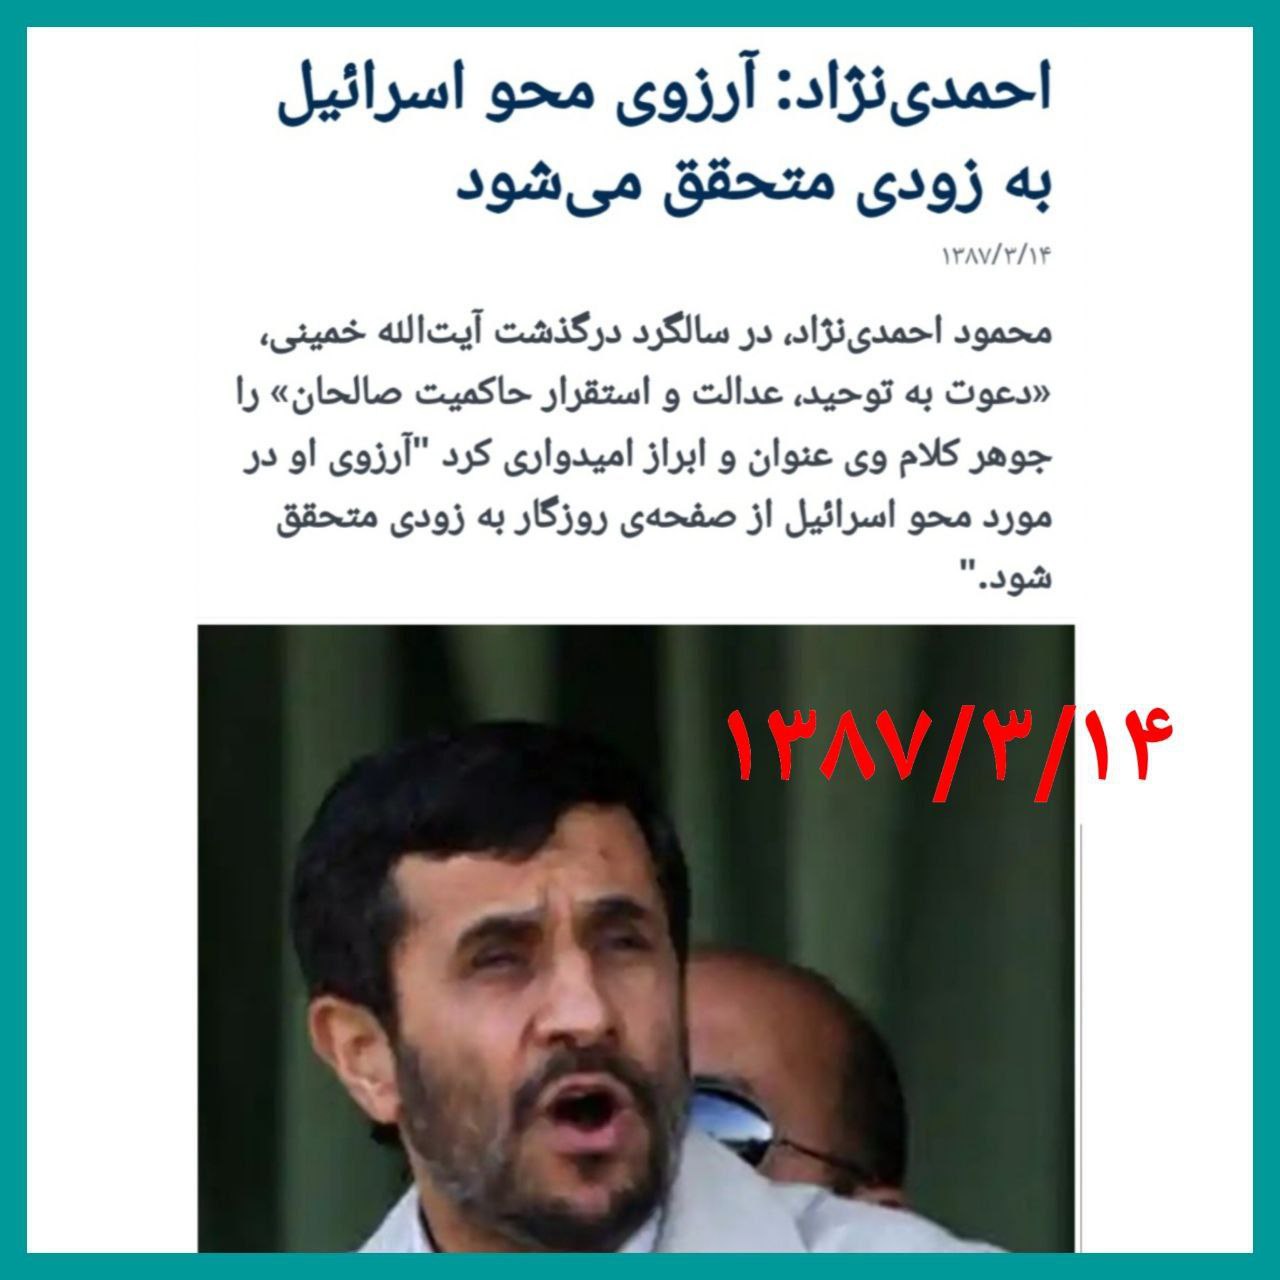 سكوت احمدى نژاد درباره حملات اسراييل و سفر به كشور دوست تل آويو!